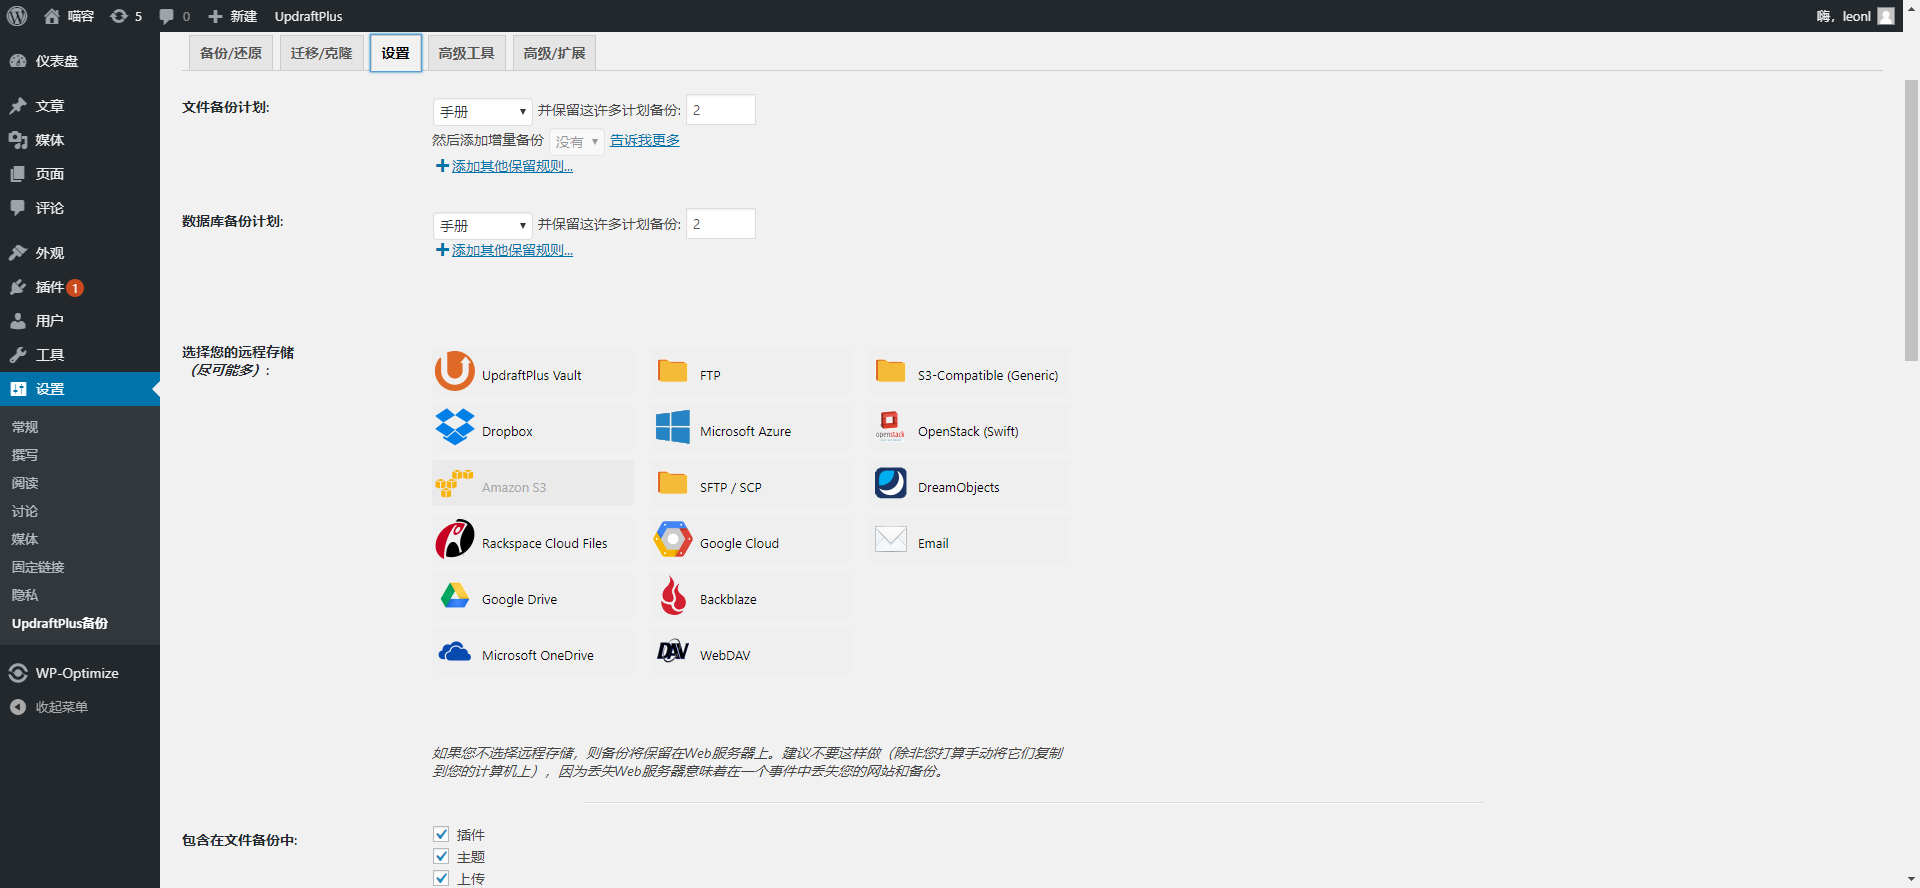 WP备份迁移插件 UpdraftPlus Premium v2.16.26.24 专业版 破解 中文汉化 wordpress插件 已更新